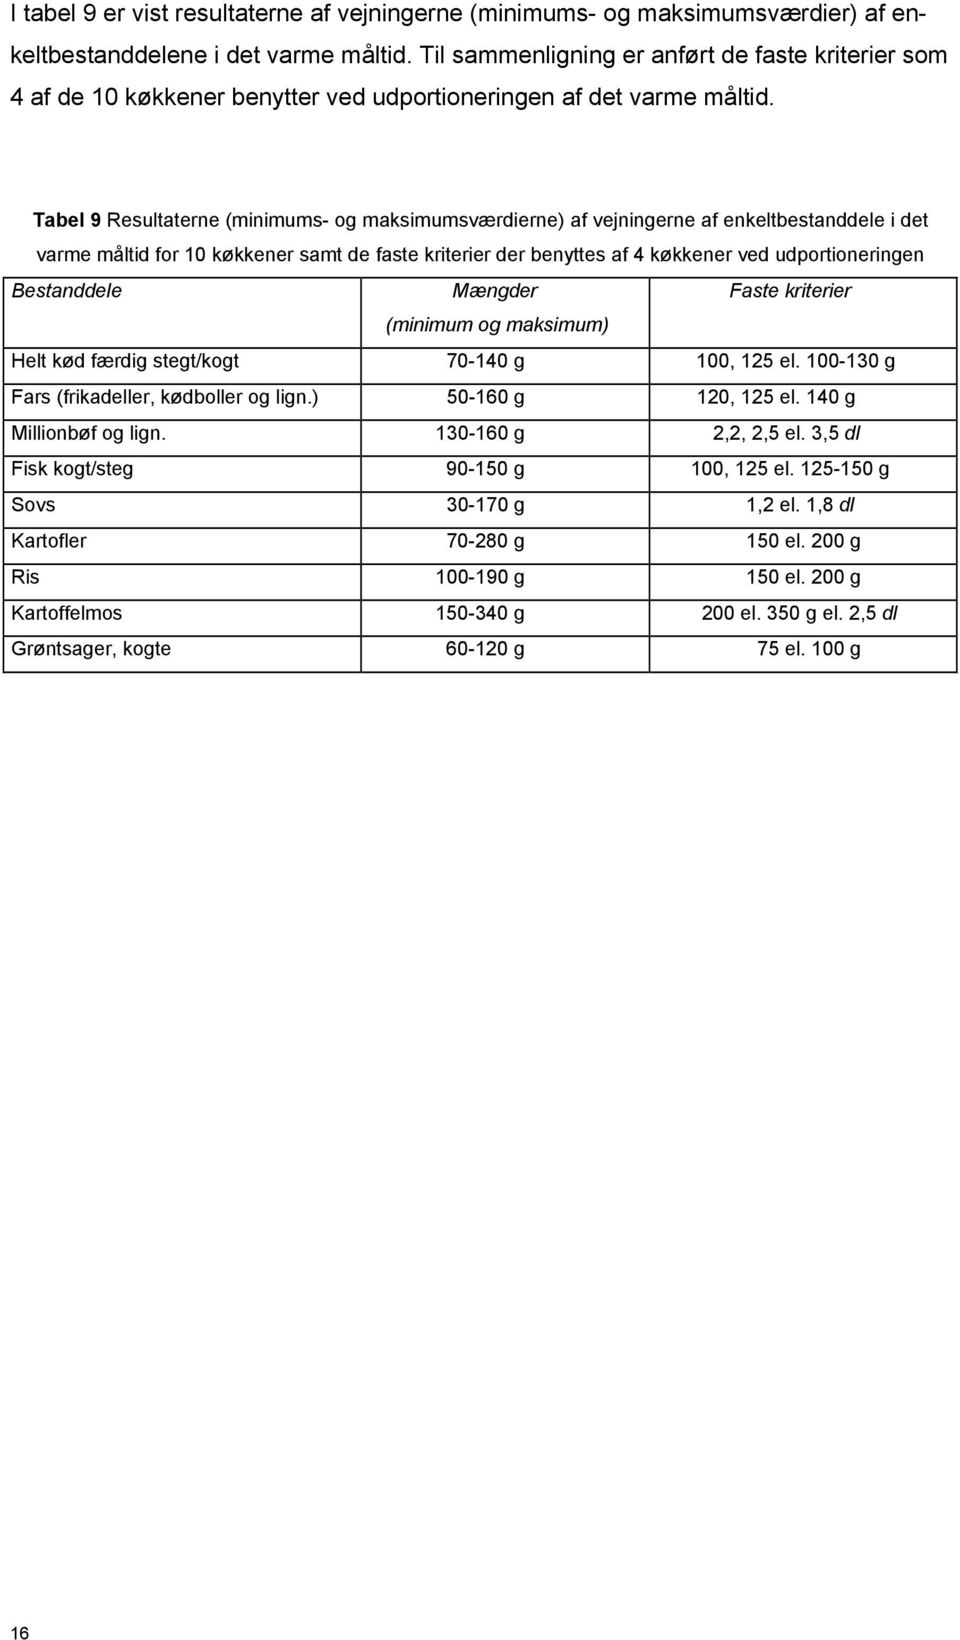 Tabel 9 Resultaterne (minimums- og maksimumsværdierne) af vejningerne af enkeltbestanddele i det varme måltid for 10 køkkener samt de faste kriterier der benyttes af 4 køkkener ved udportioneringen